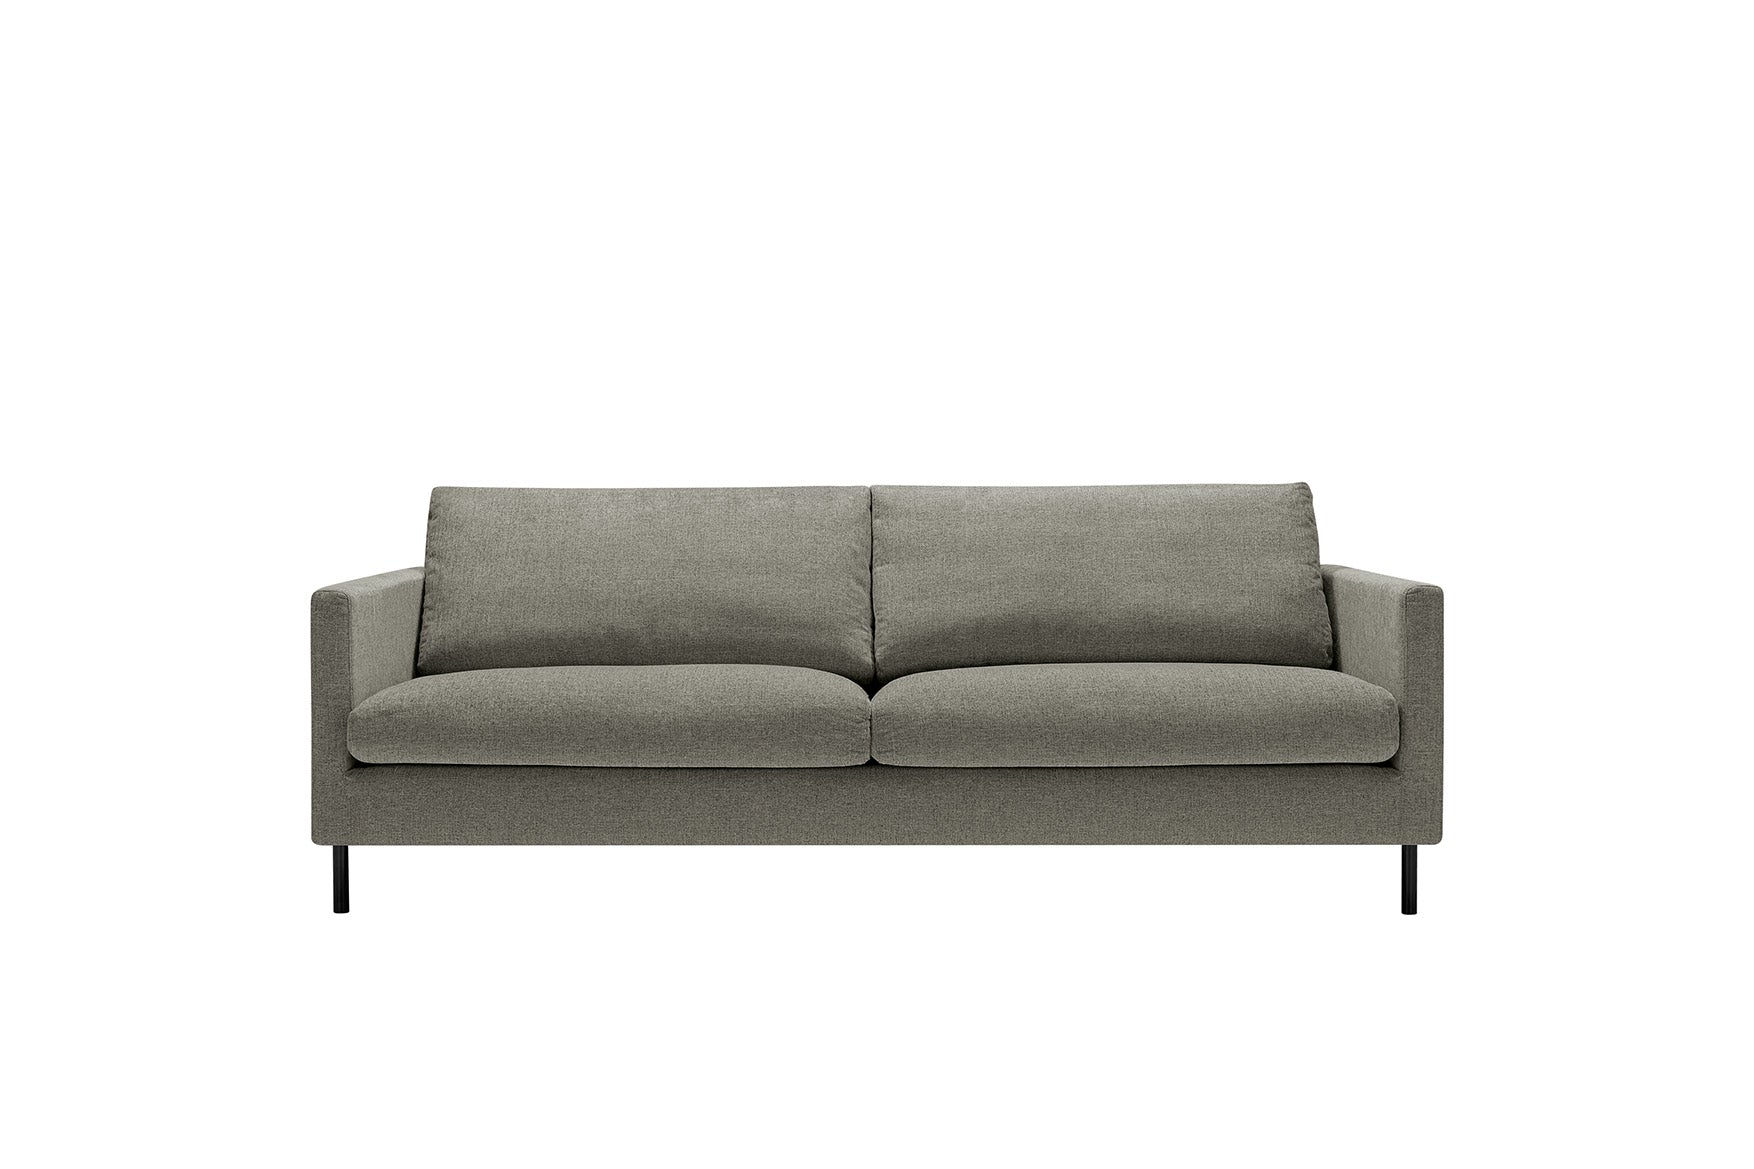 Mastrella Imilia 3 Seater Sofa